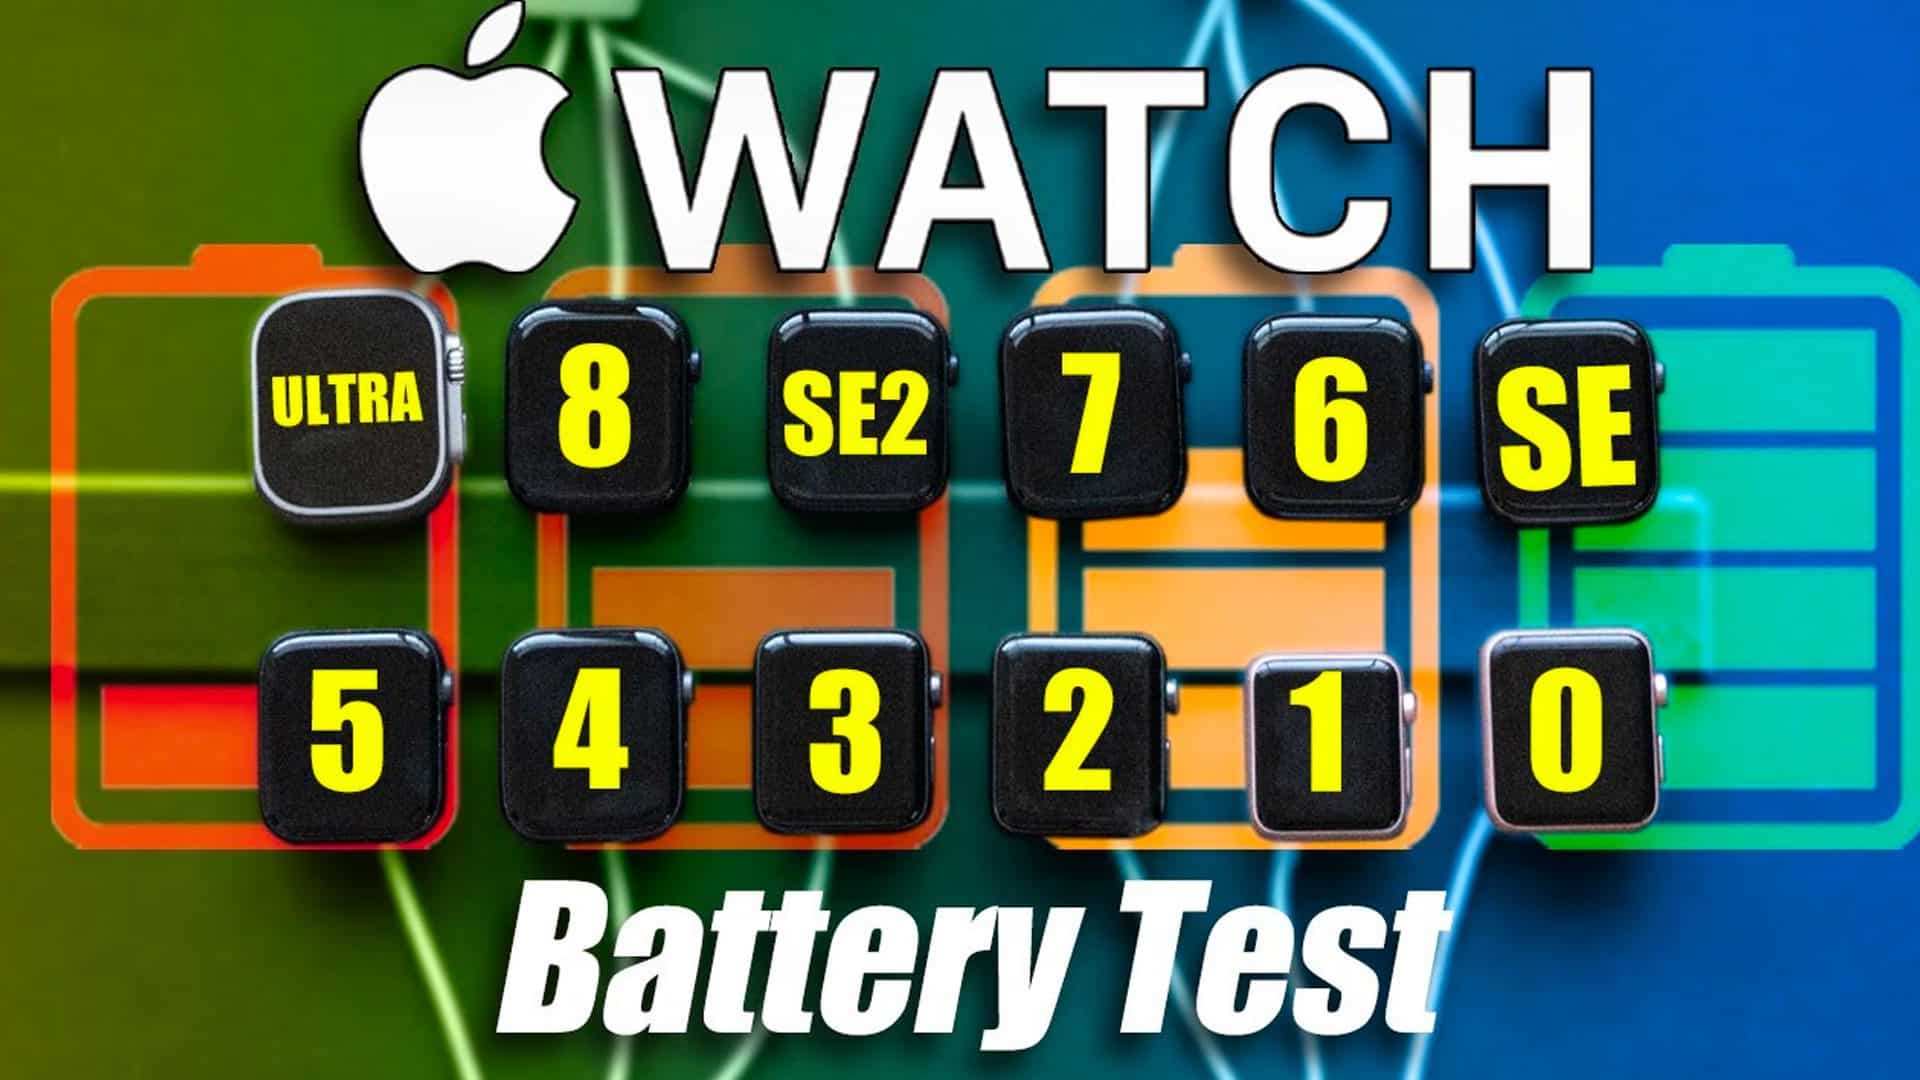 Apple Watch battery test